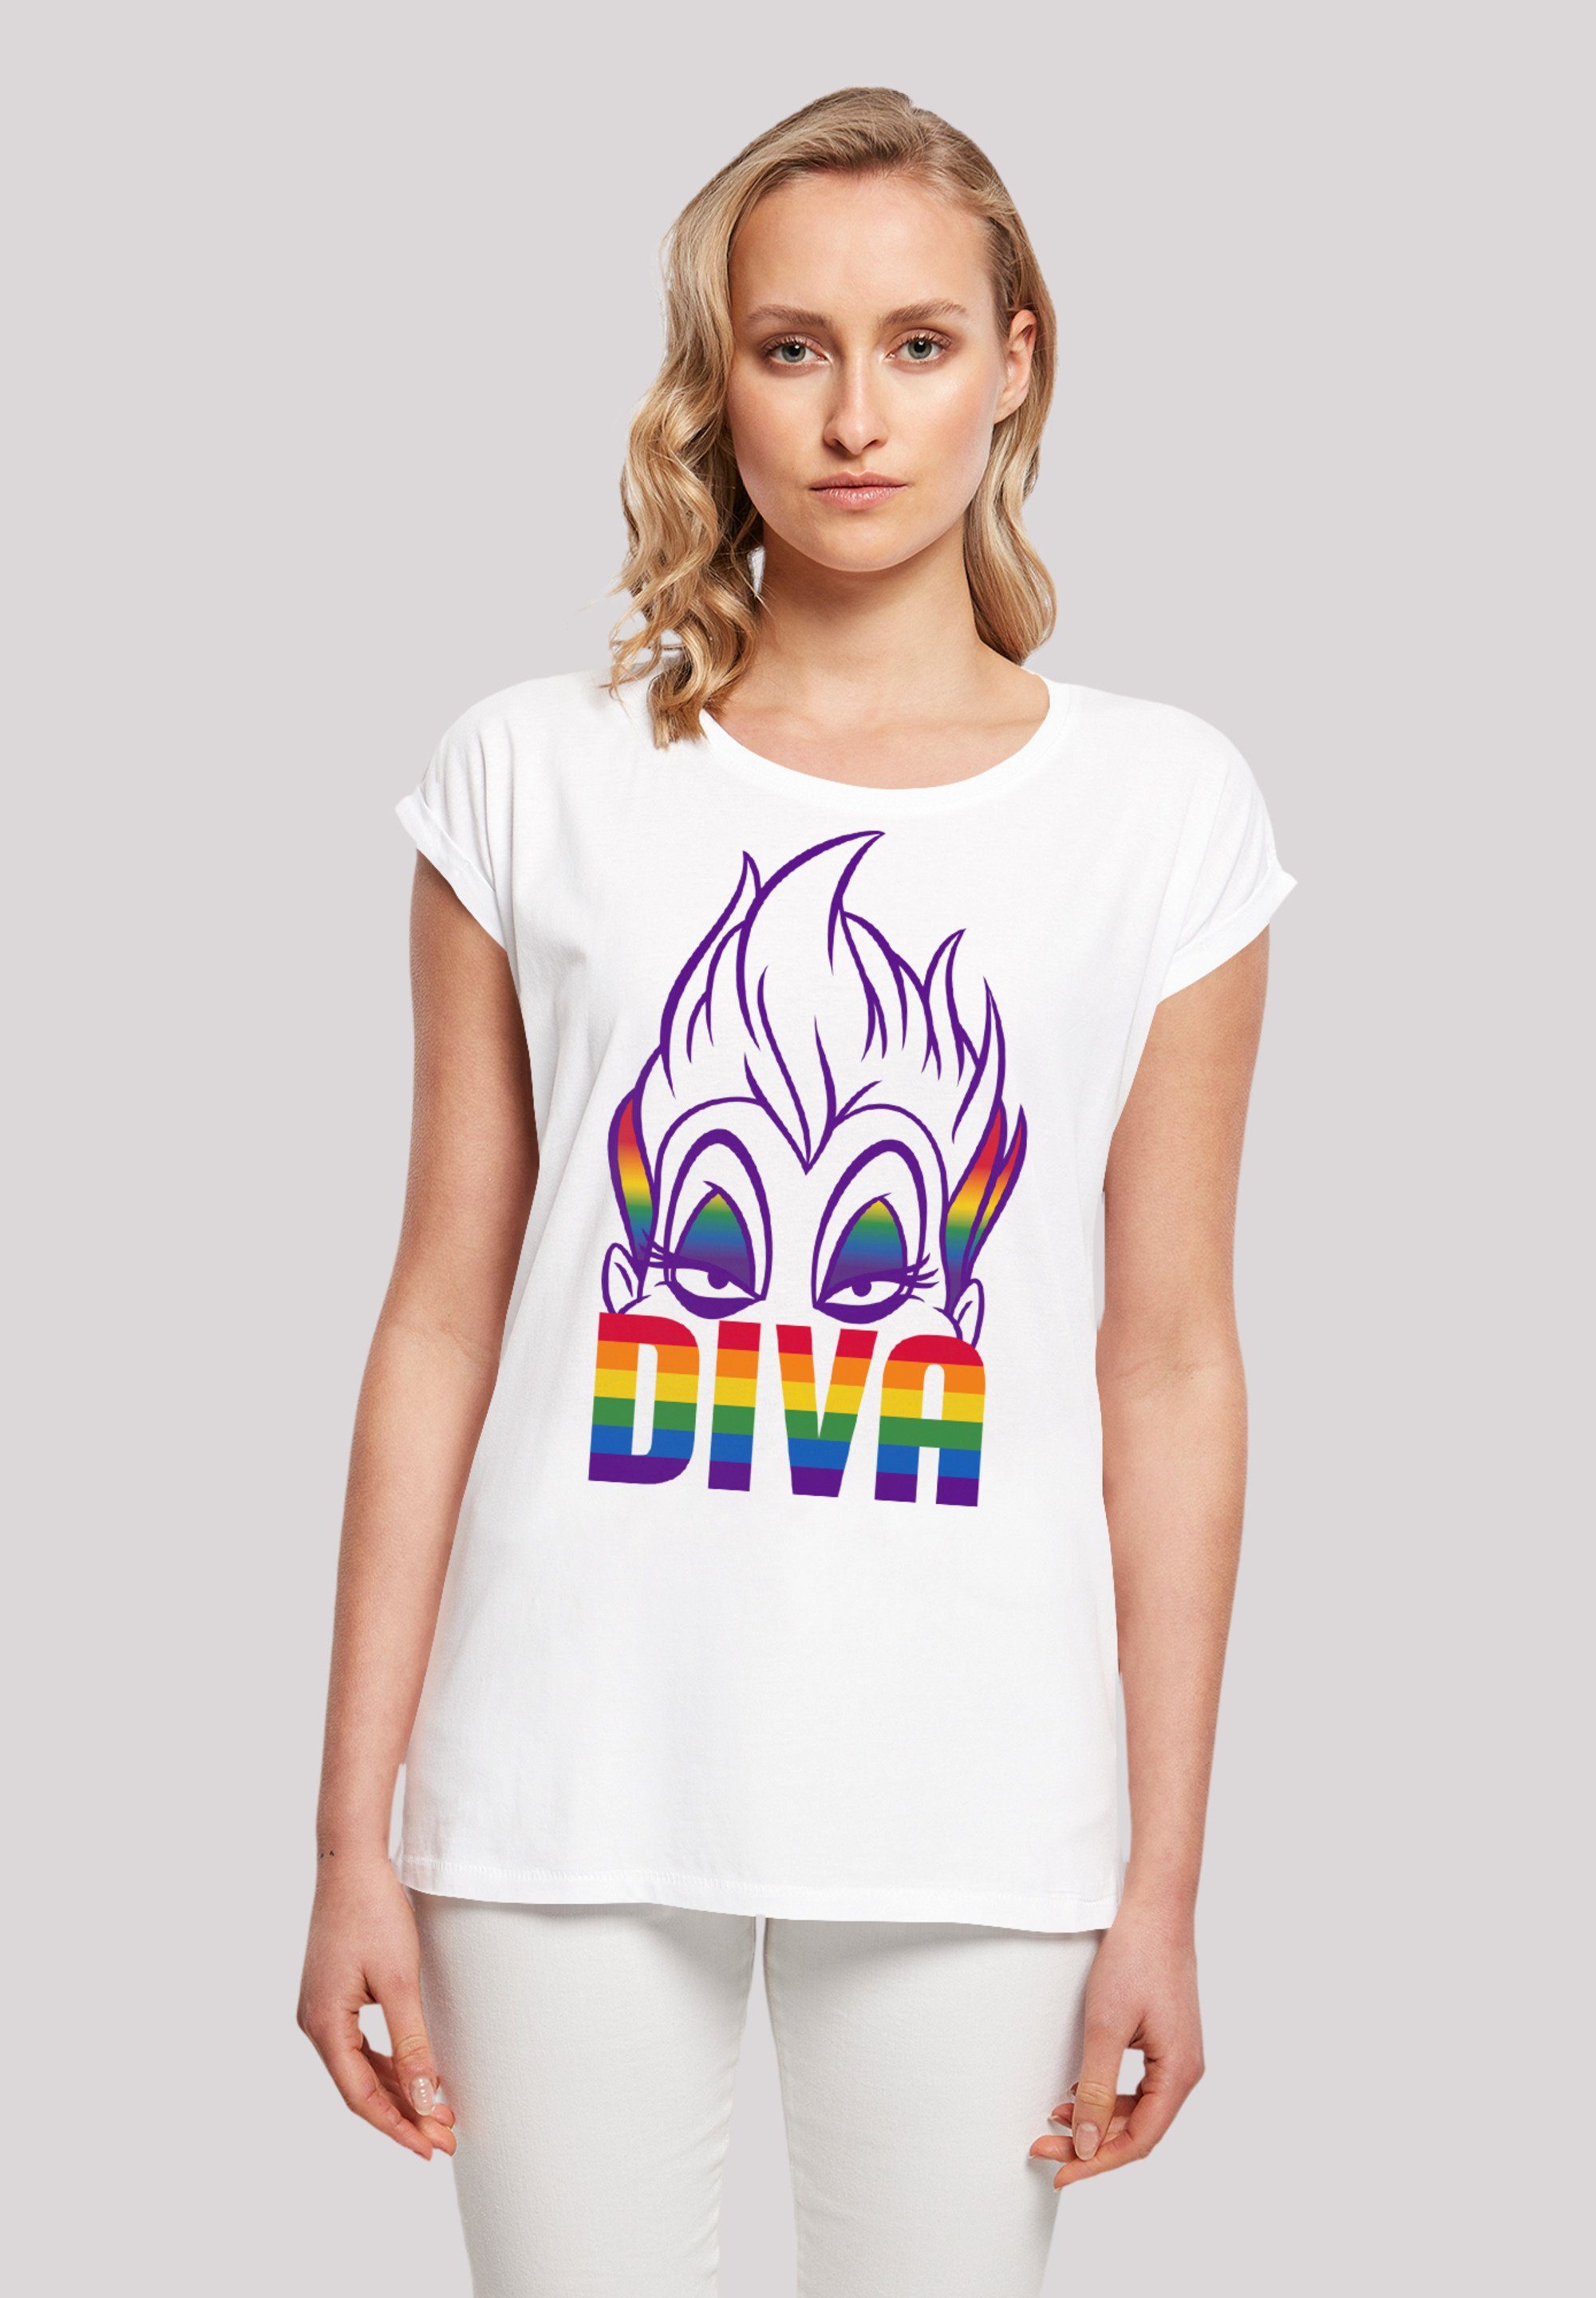 F4NT4STIC T-Shirt Disney Villains Diva Premium Qualität, Sehr weicher  Baumwollstoff mit hohem Tragekomfort